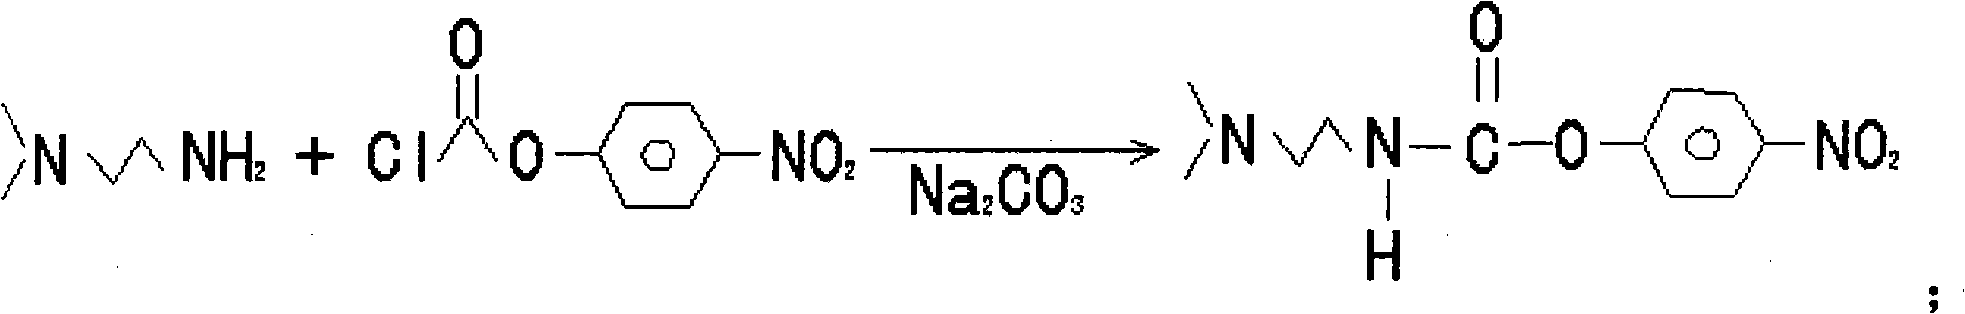 1 (dimethylamino) ethyl, 3-hydroxy-imidazoline hydrochloride and preparation method thereof